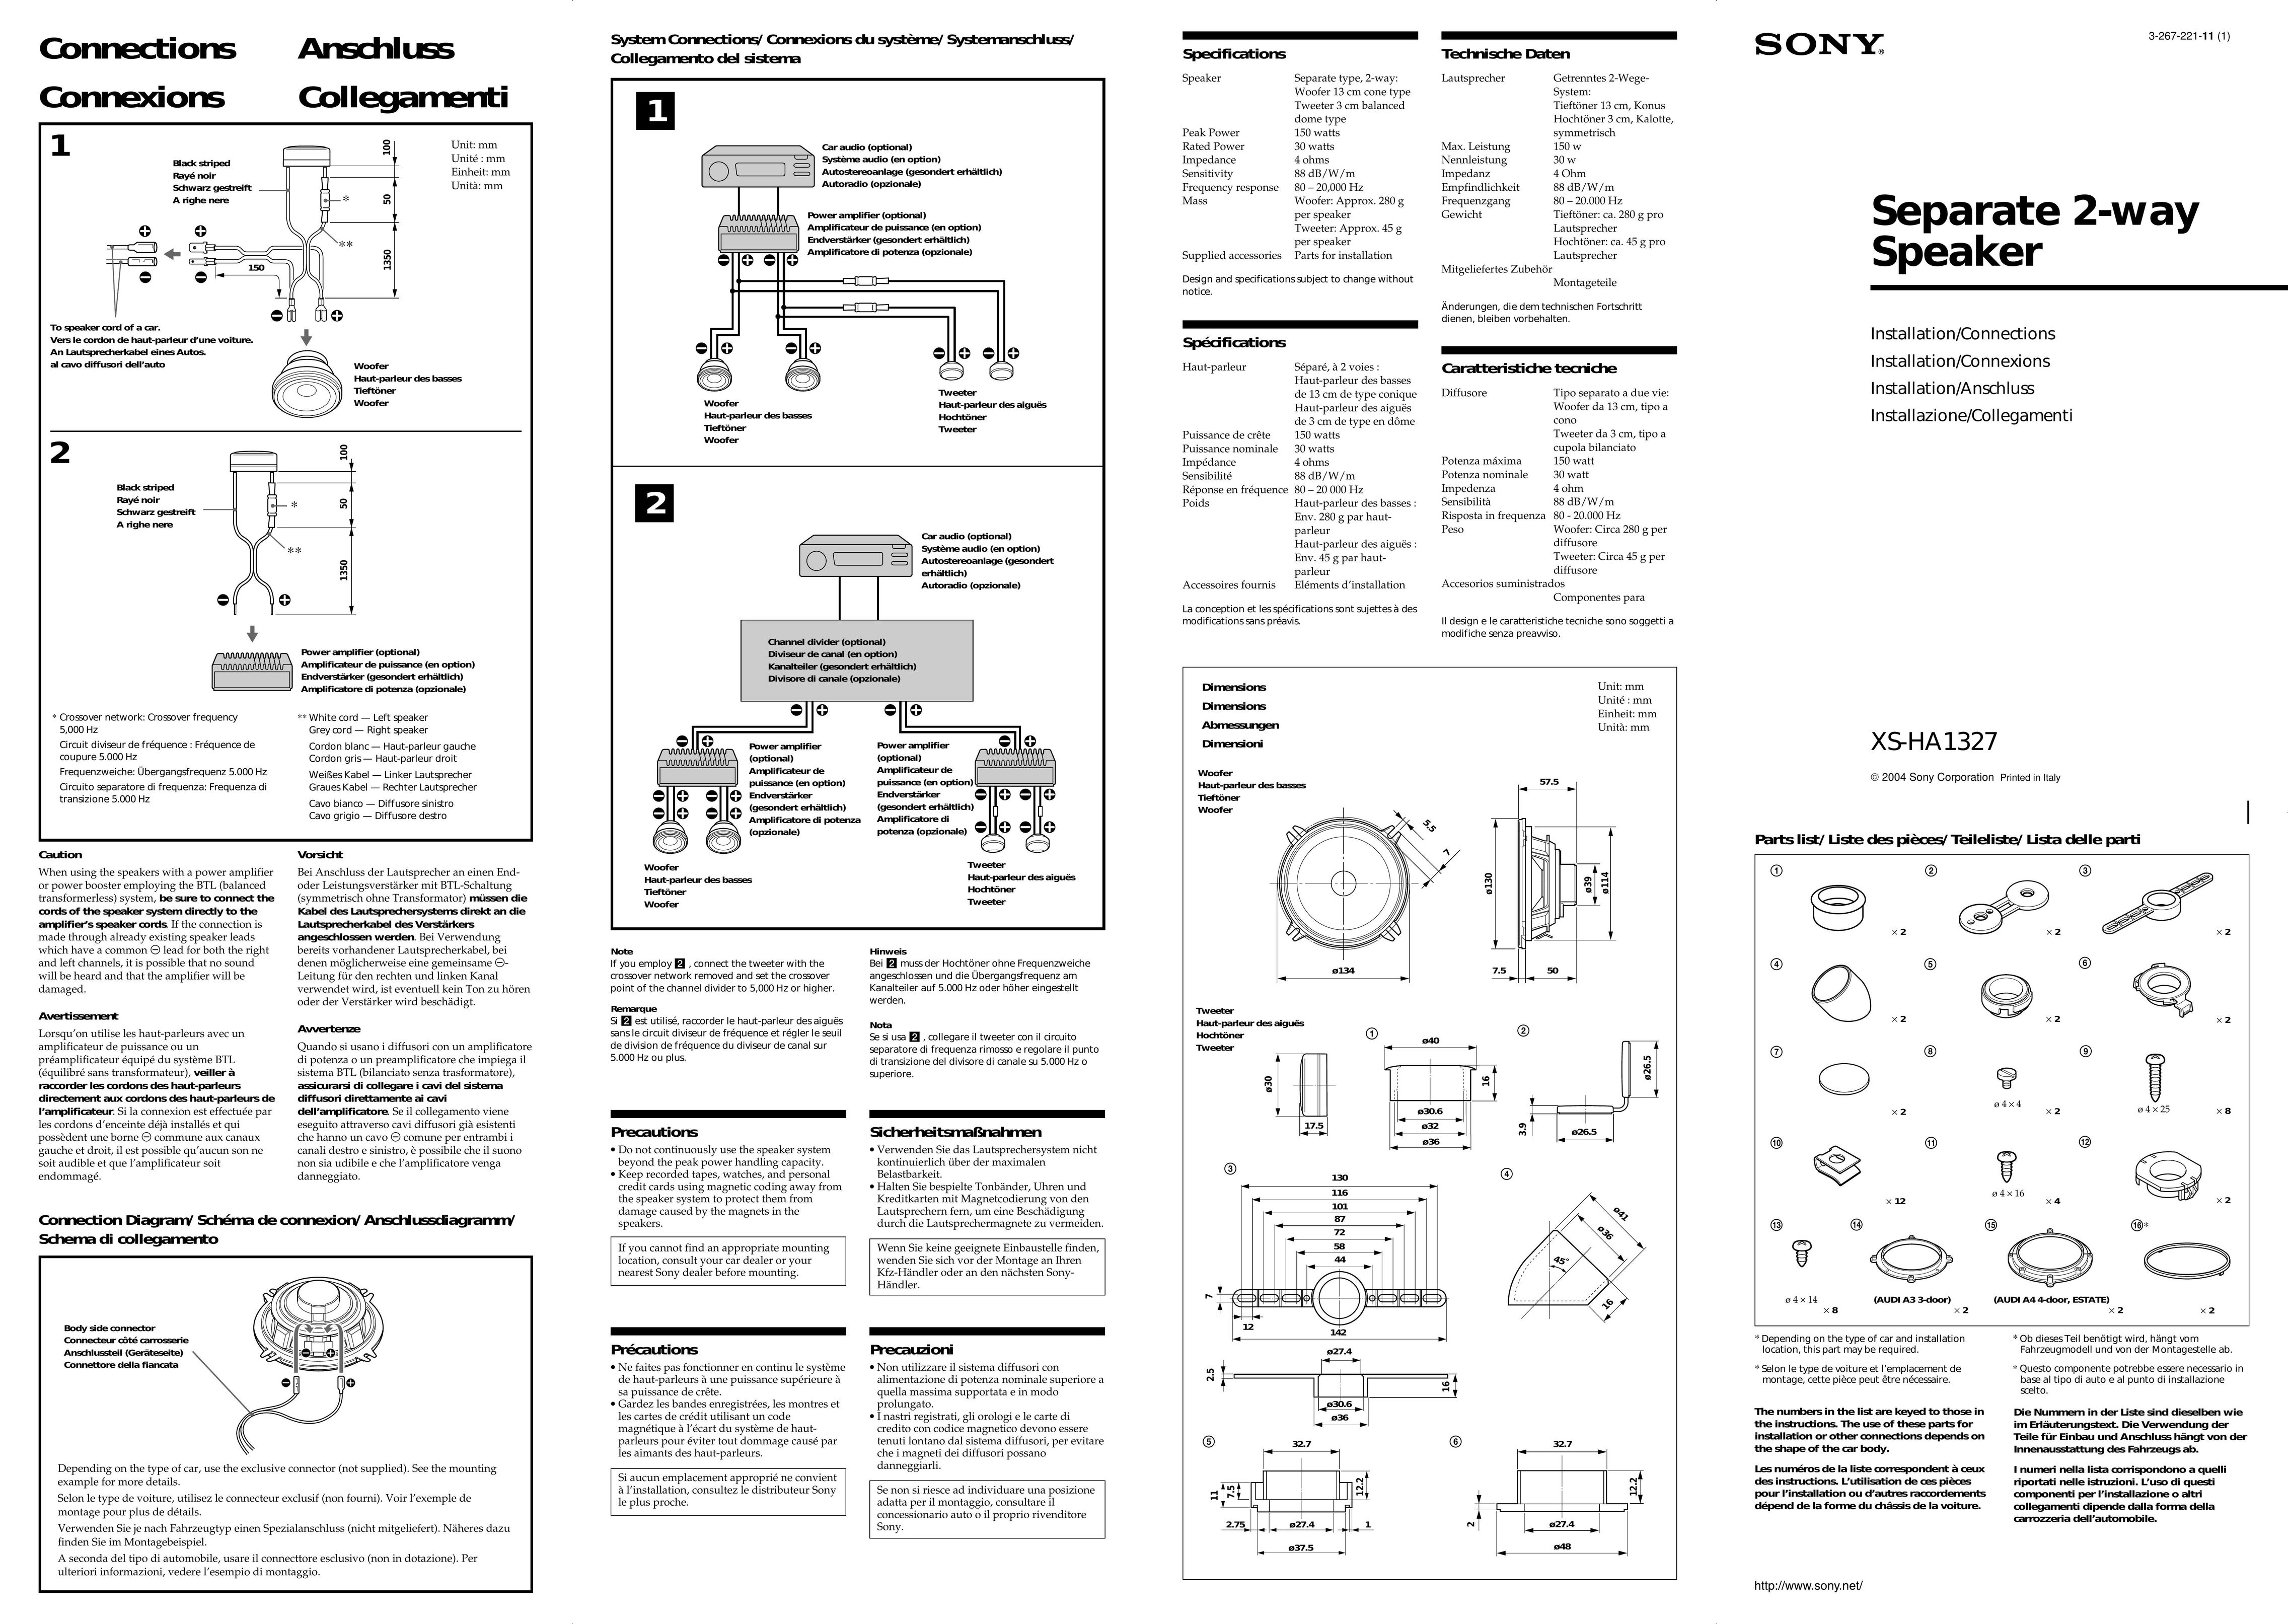 Sony HA1327 Speaker User Manual